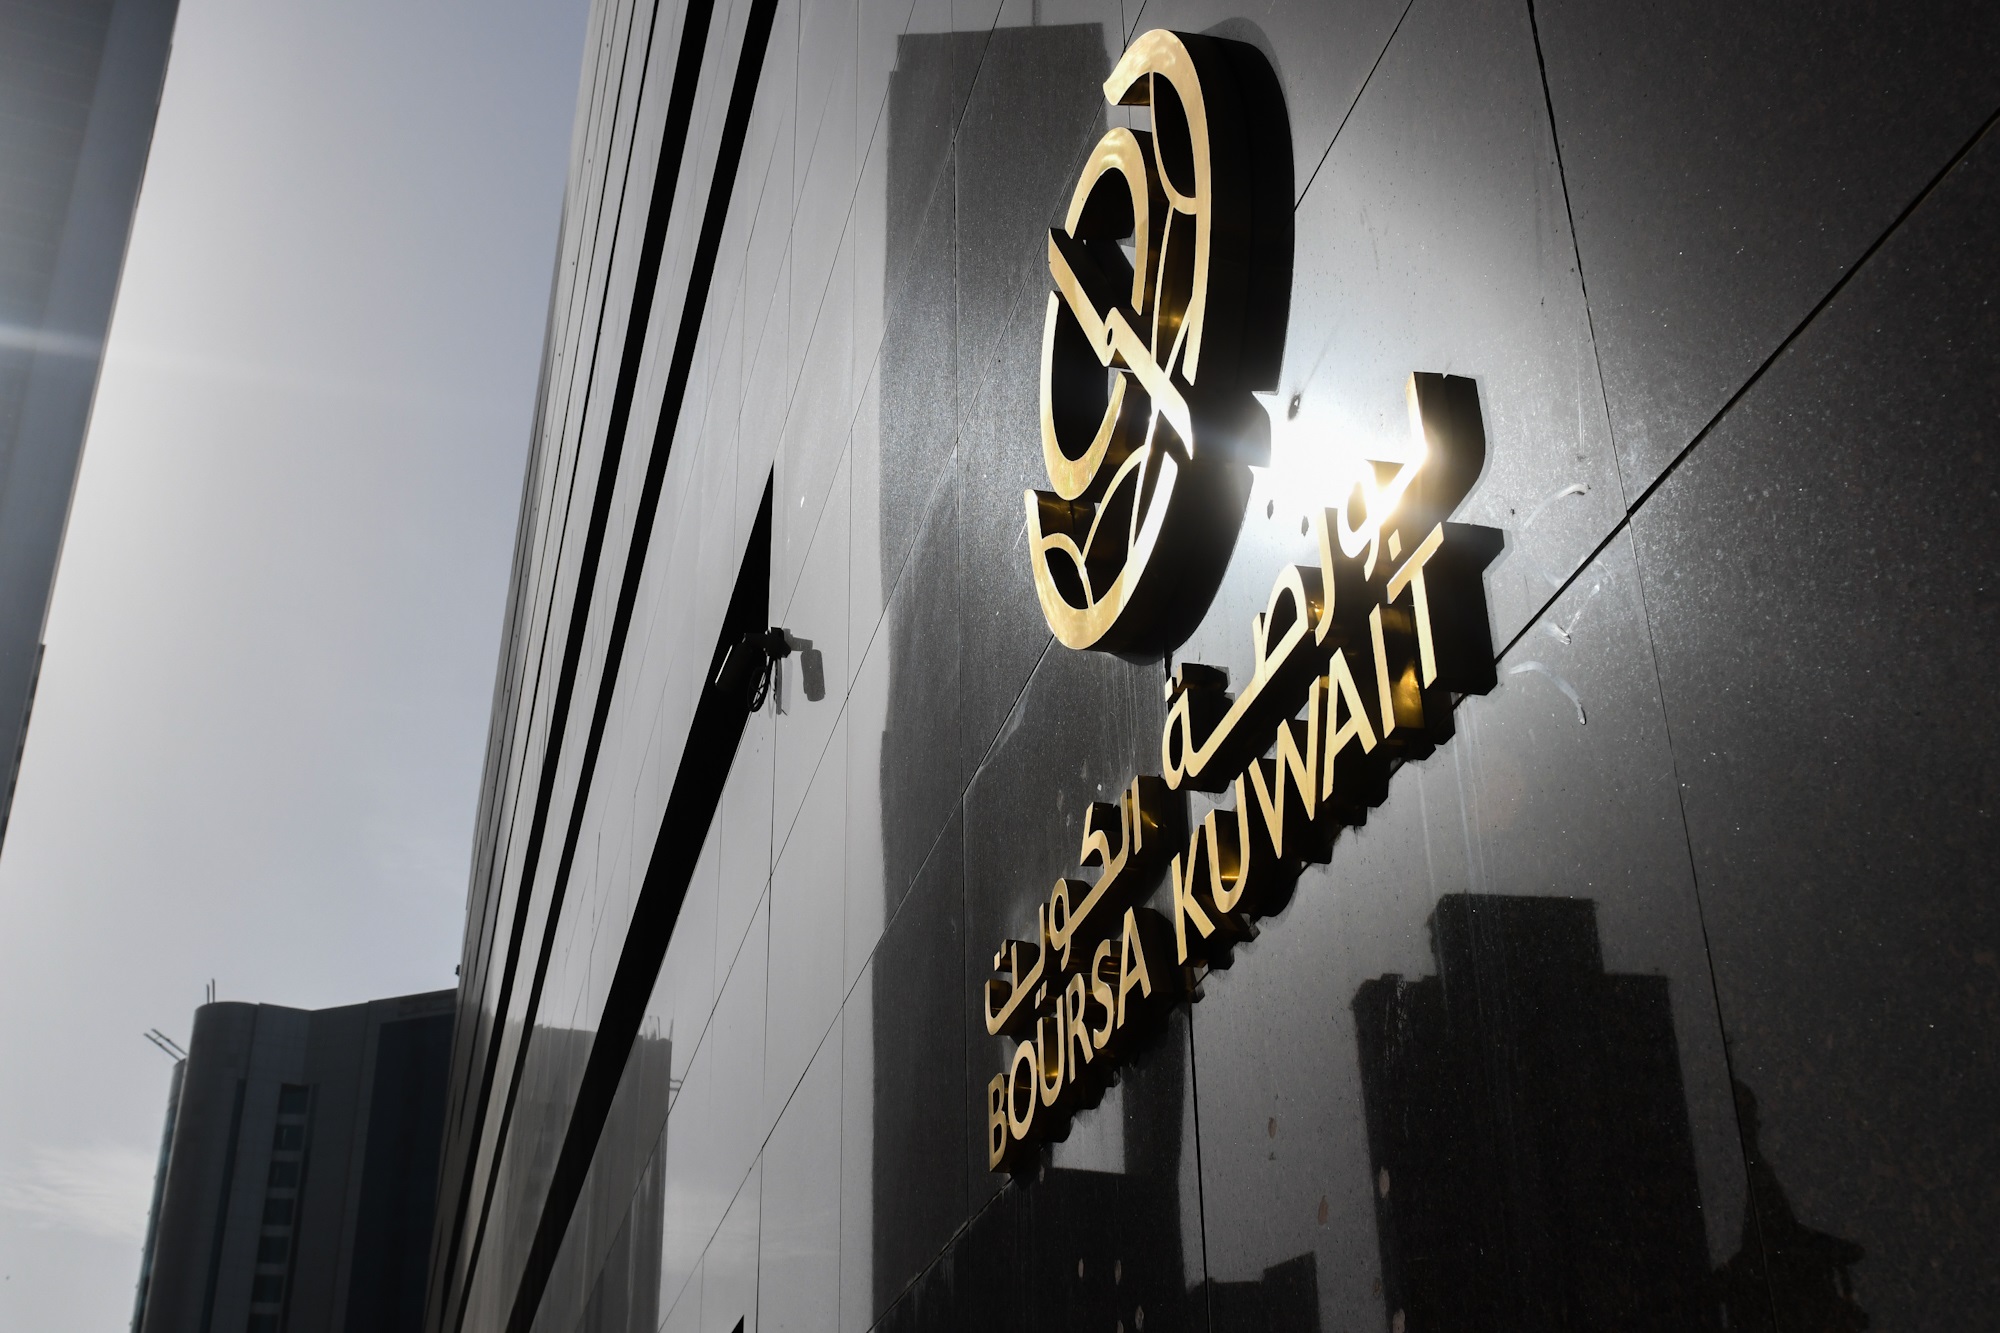 بورصة الكويت تغلق تعاملاتها على انخفاض مؤشرها العام 8ر14 نقطة ليبلغ 59ر7595 بنسبة 20ر0 في المئة                                                                                                                                                           